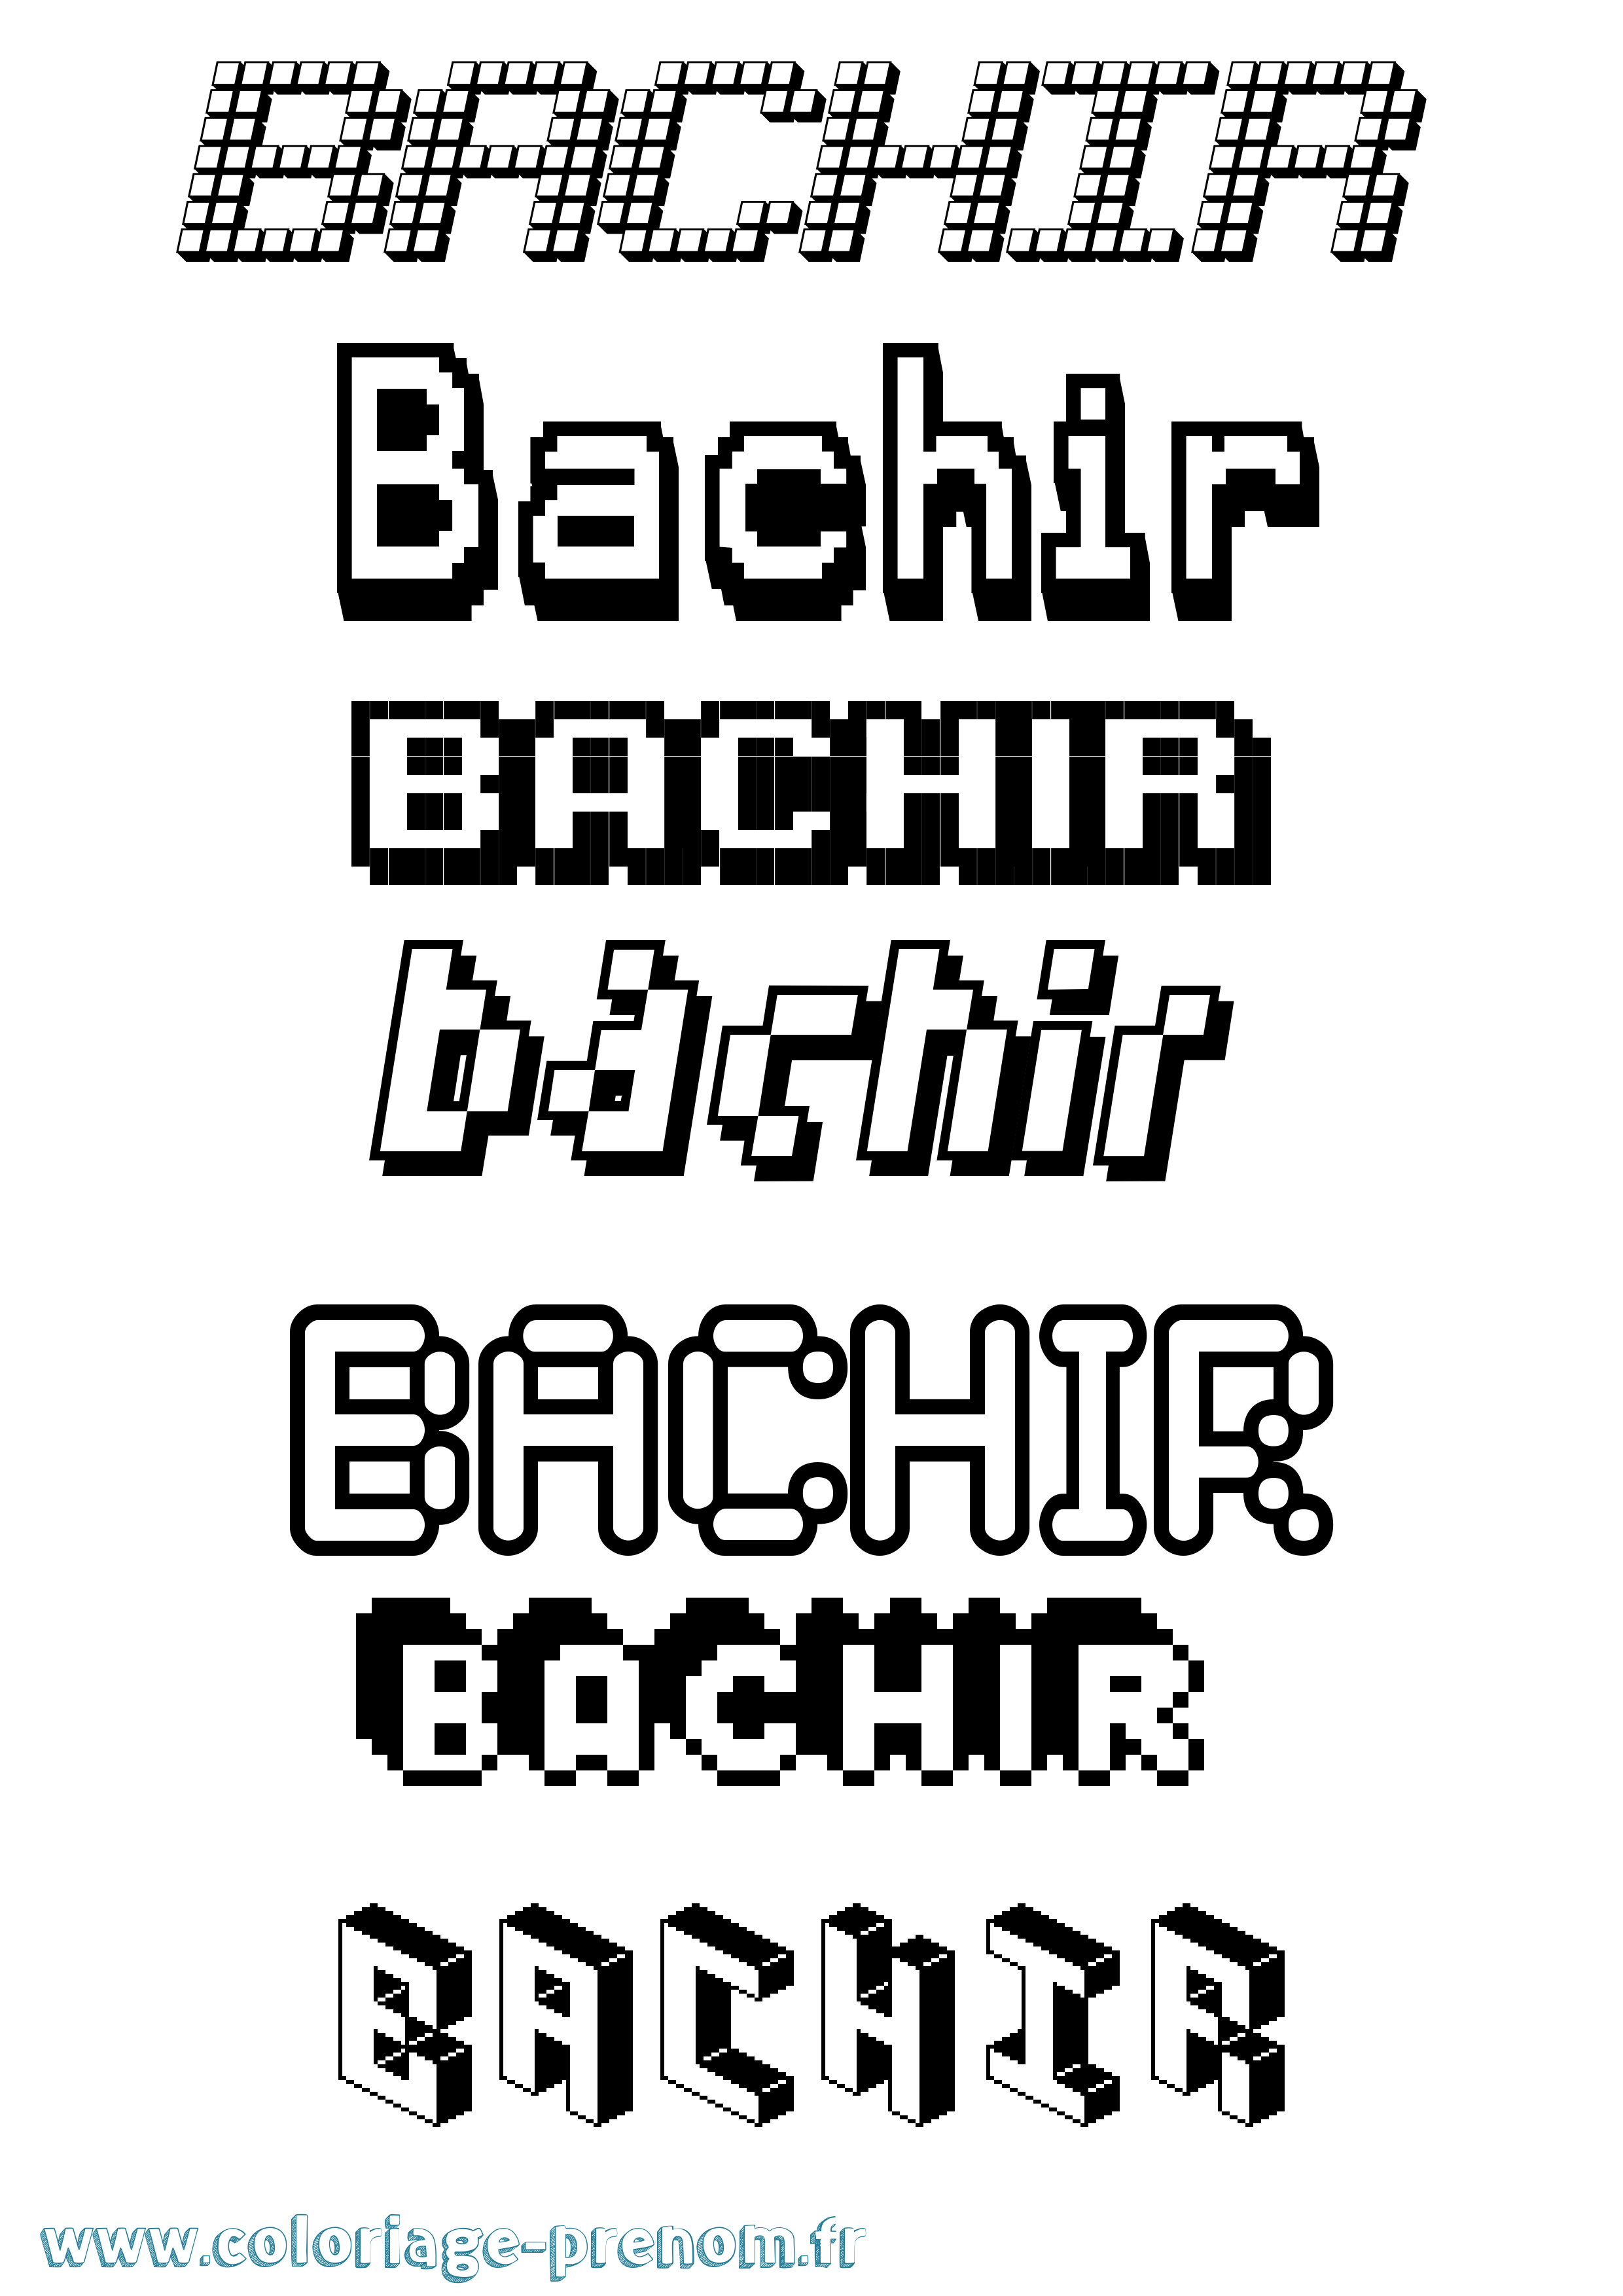 Coloriage prénom Bachir Pixel